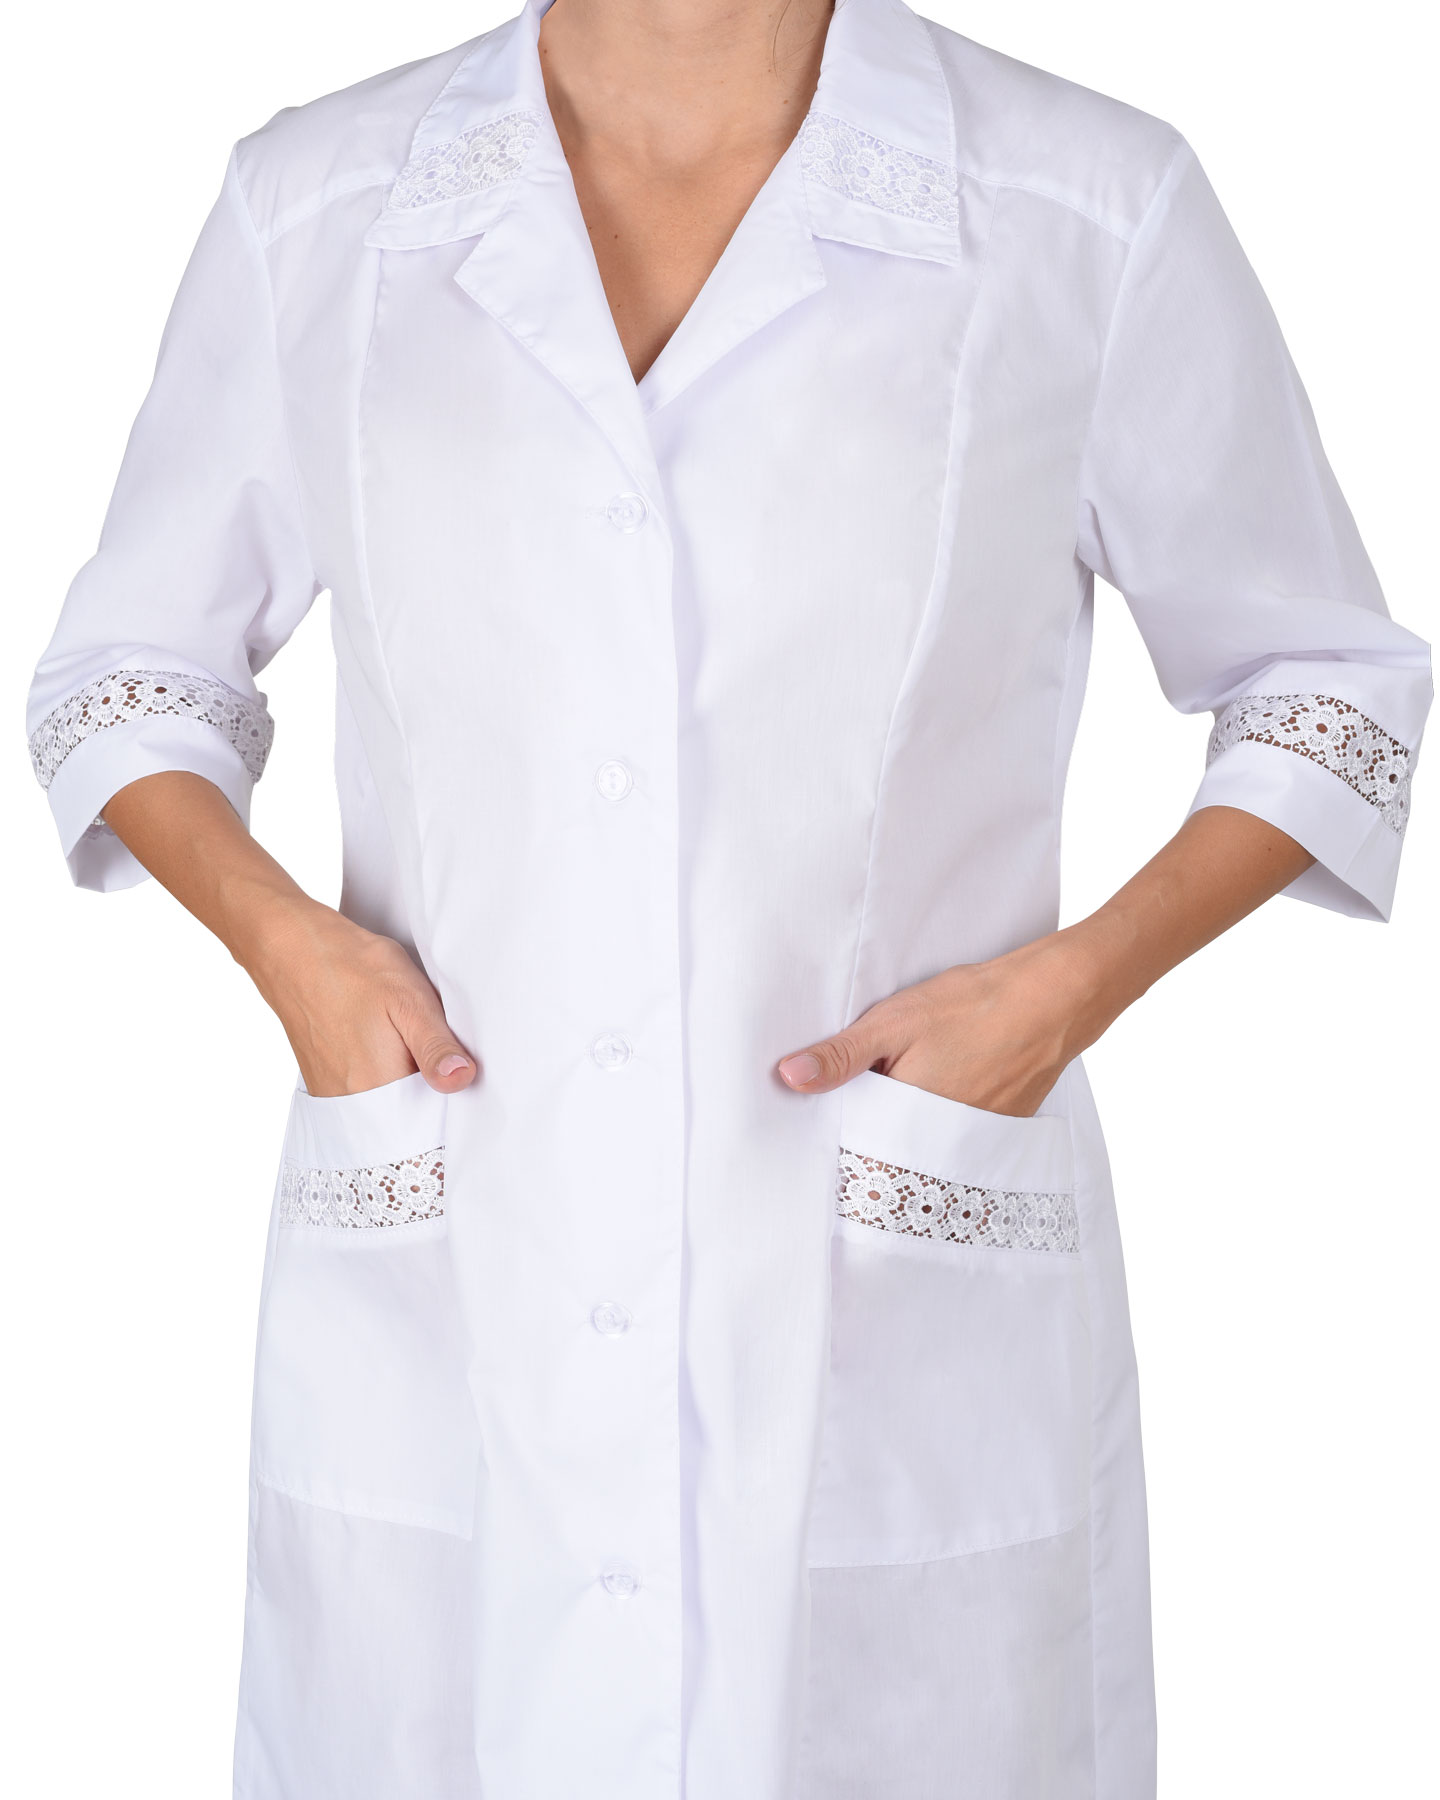 Женские халаты белые медицинские